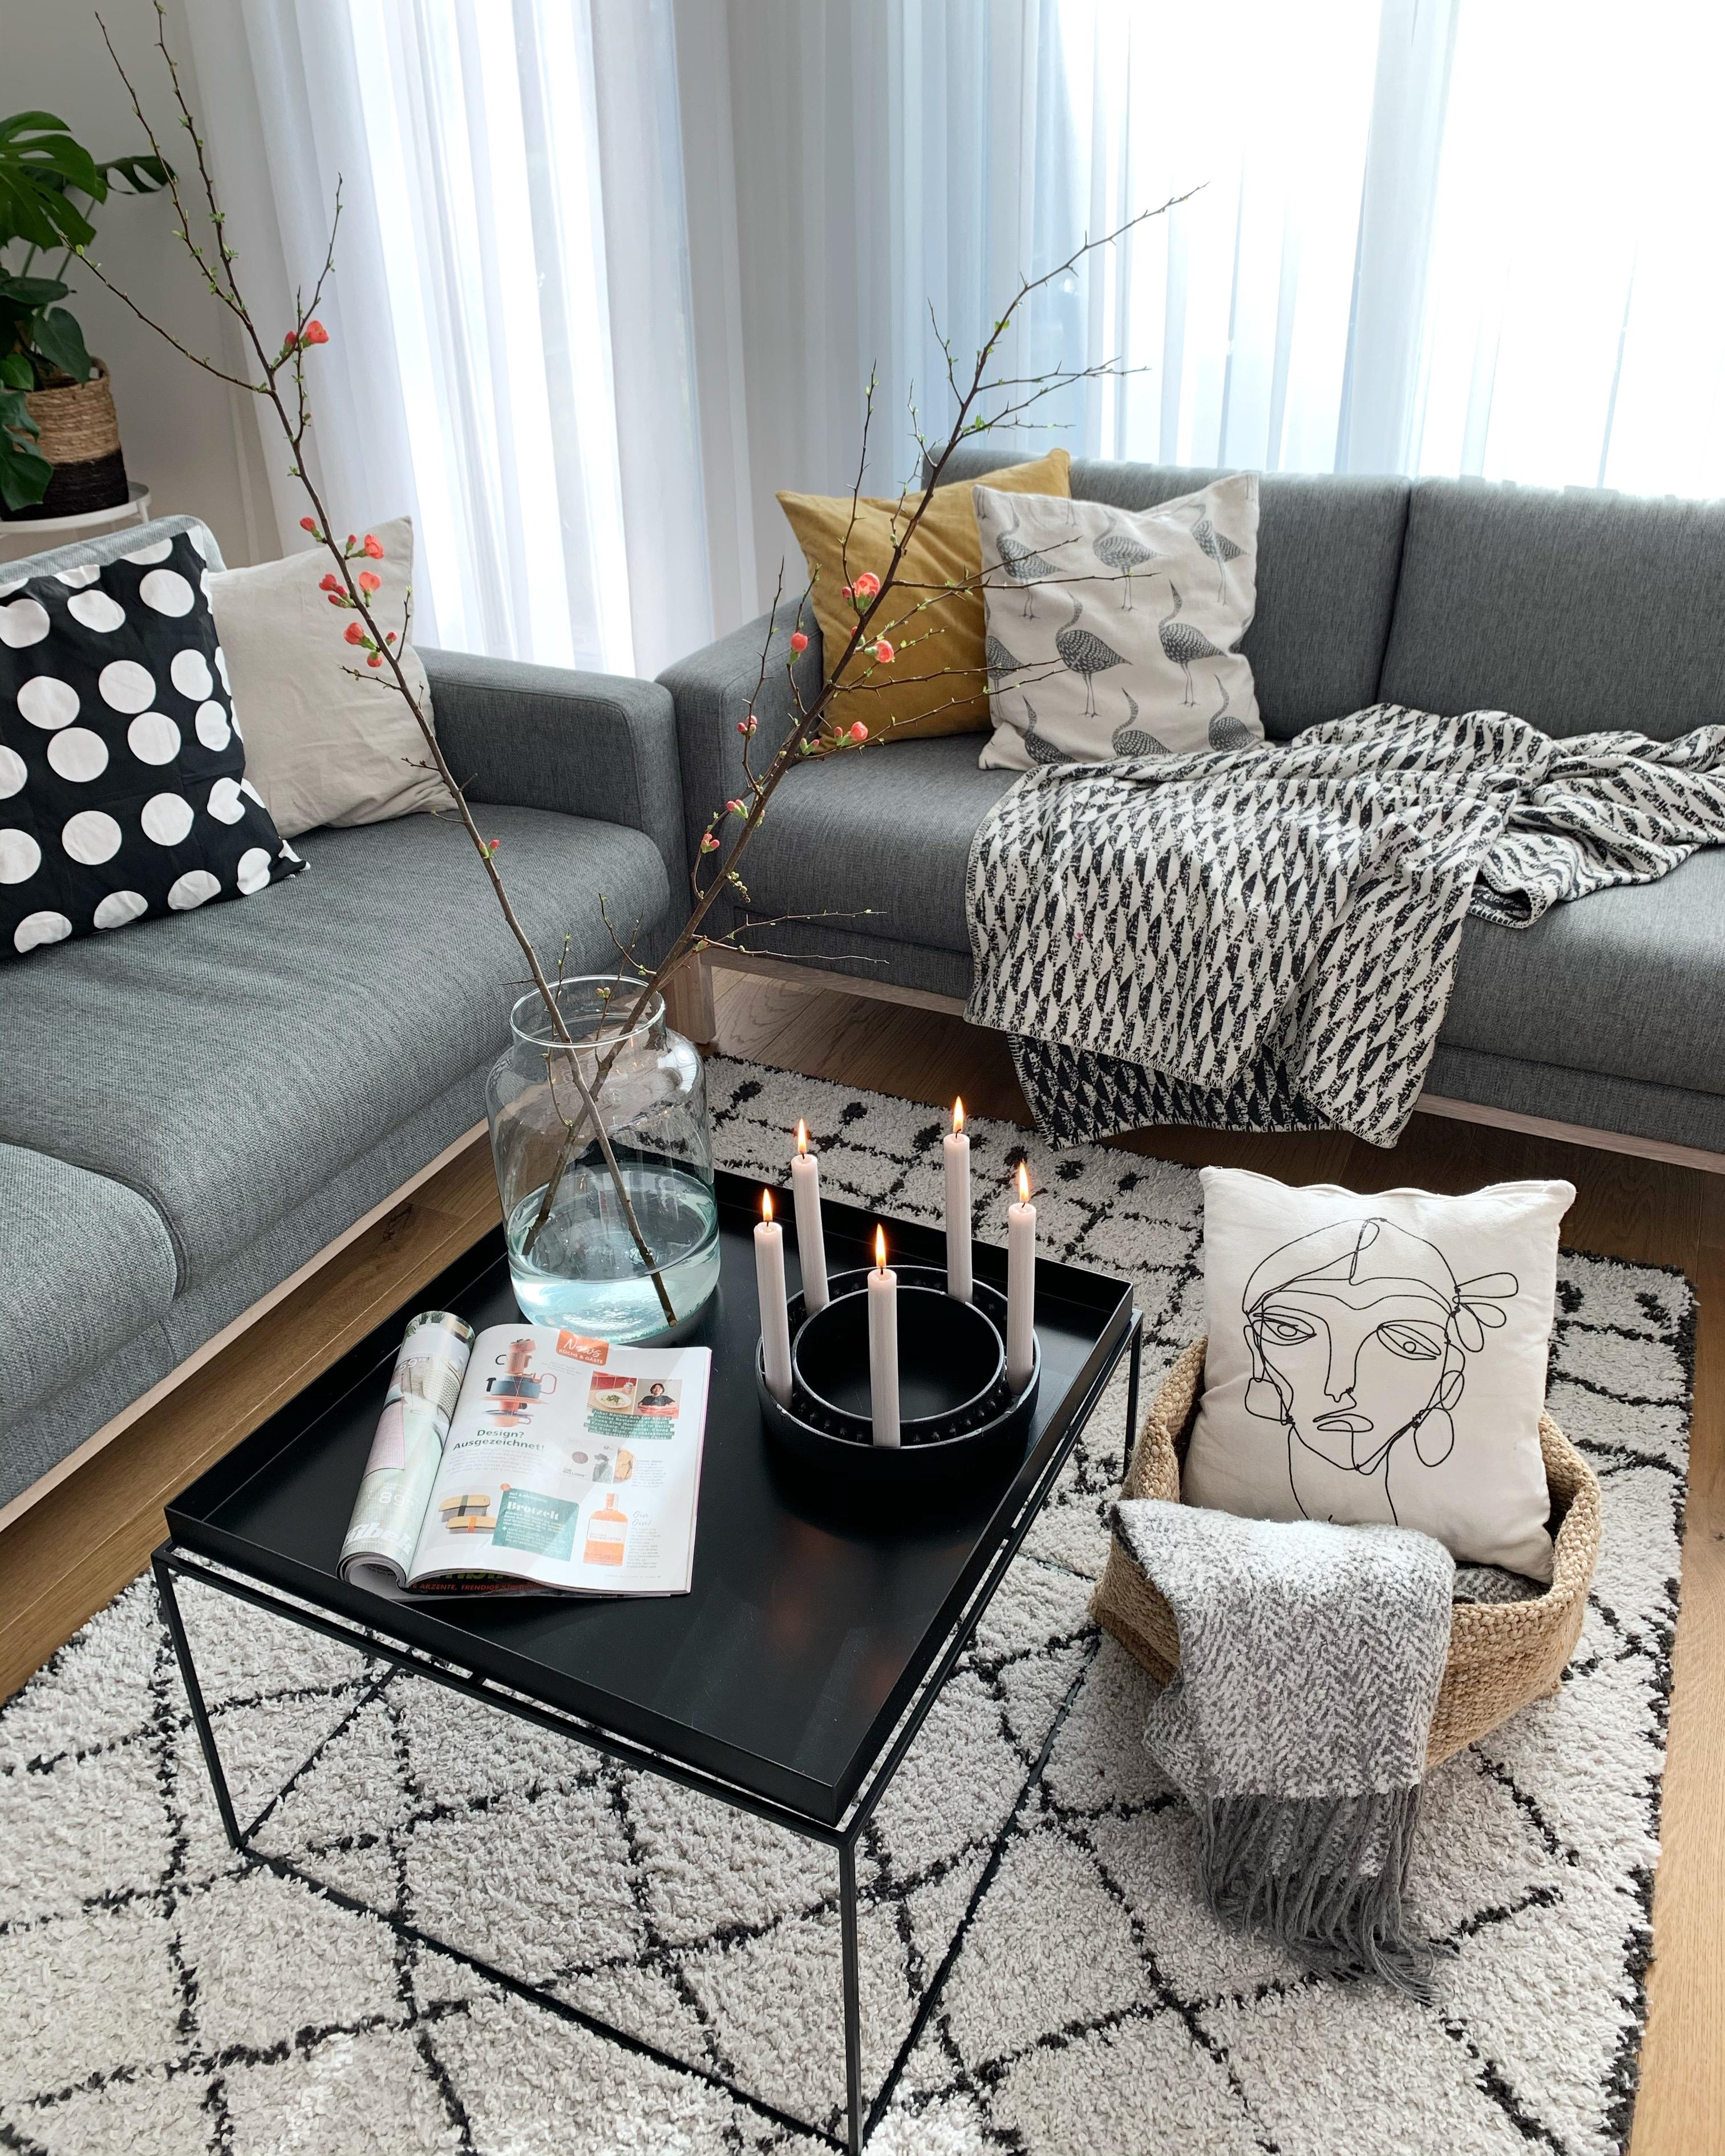 Es ist Frühling draußen ☀️ #saturdaymood #couchstyle #interior